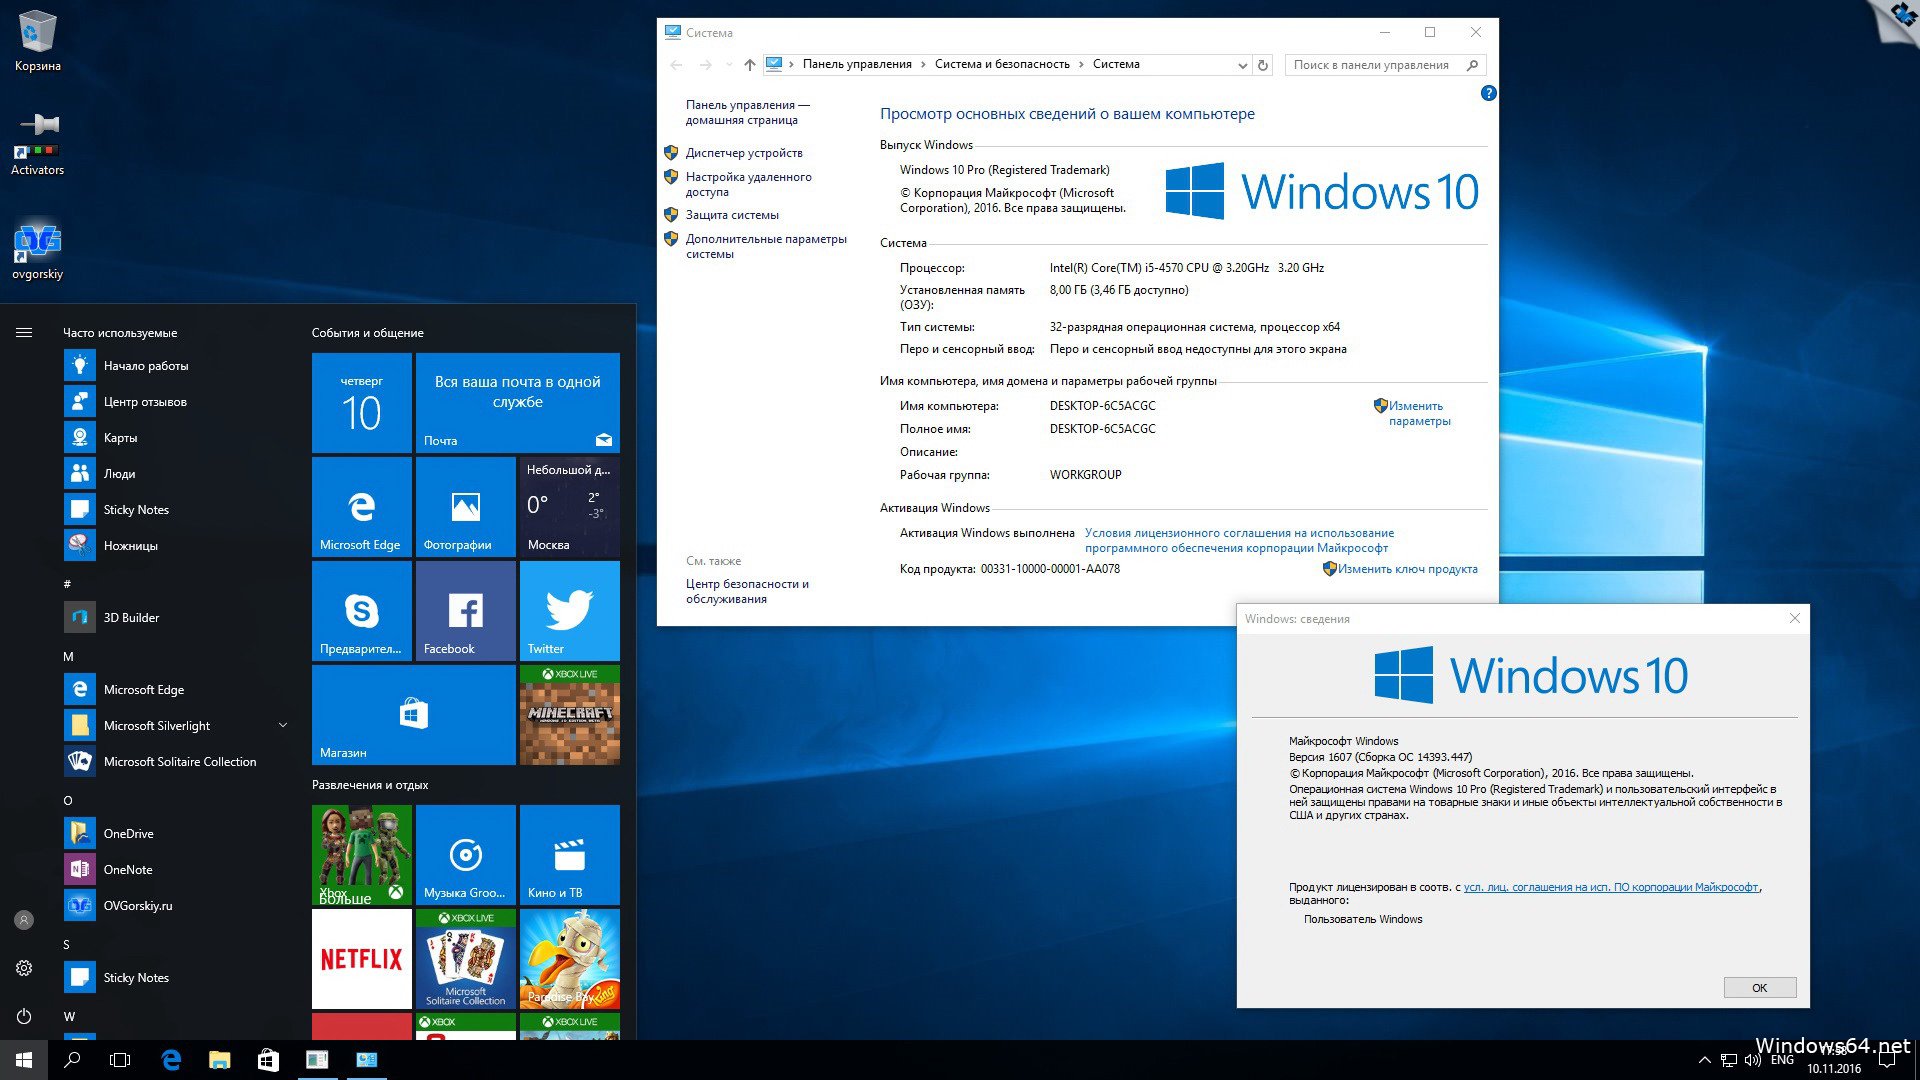 Вин 10 64 бит. Операционная система Microsoft Windows 10 Pro. Операционная система виндовс 10 домашняя. Операционная система Windows 10 Pro x64. Операционная система виндовс 10 профессиональная.